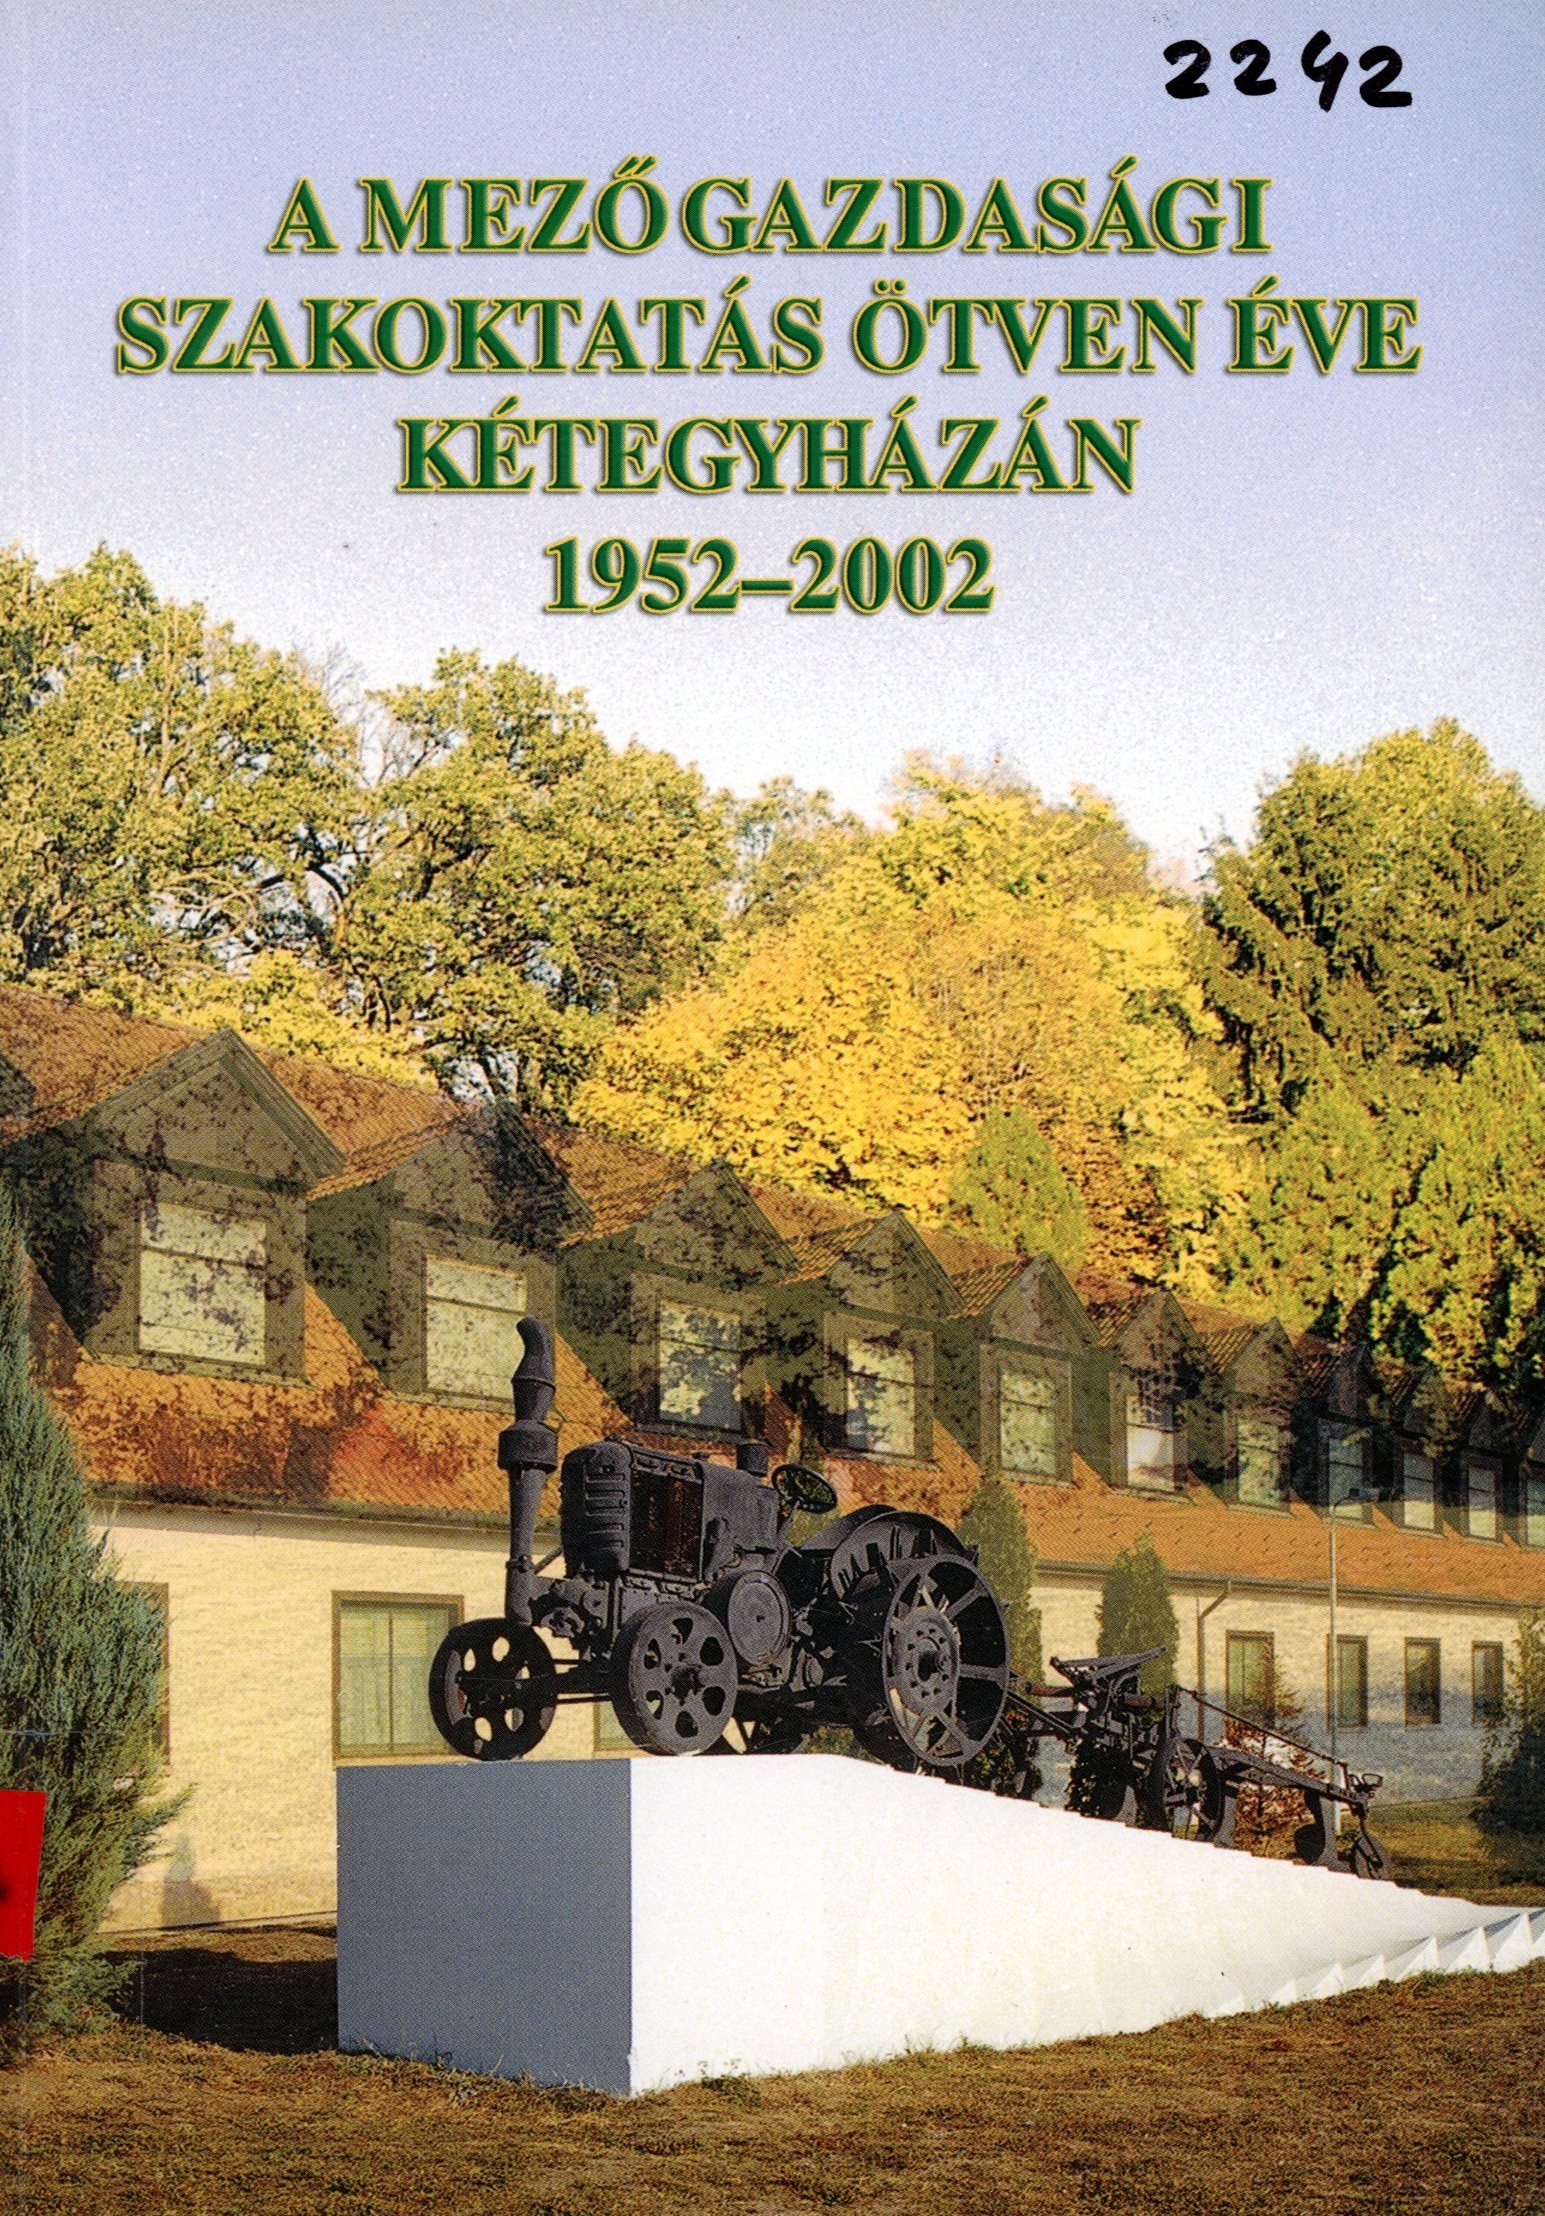 A Mezőgazdasági Szakoktatás ötven éve Kétegyházán 1952-2002 (Erkel Ferenc Múzeum és Könyvtár, Gyula CC BY-NC-SA)